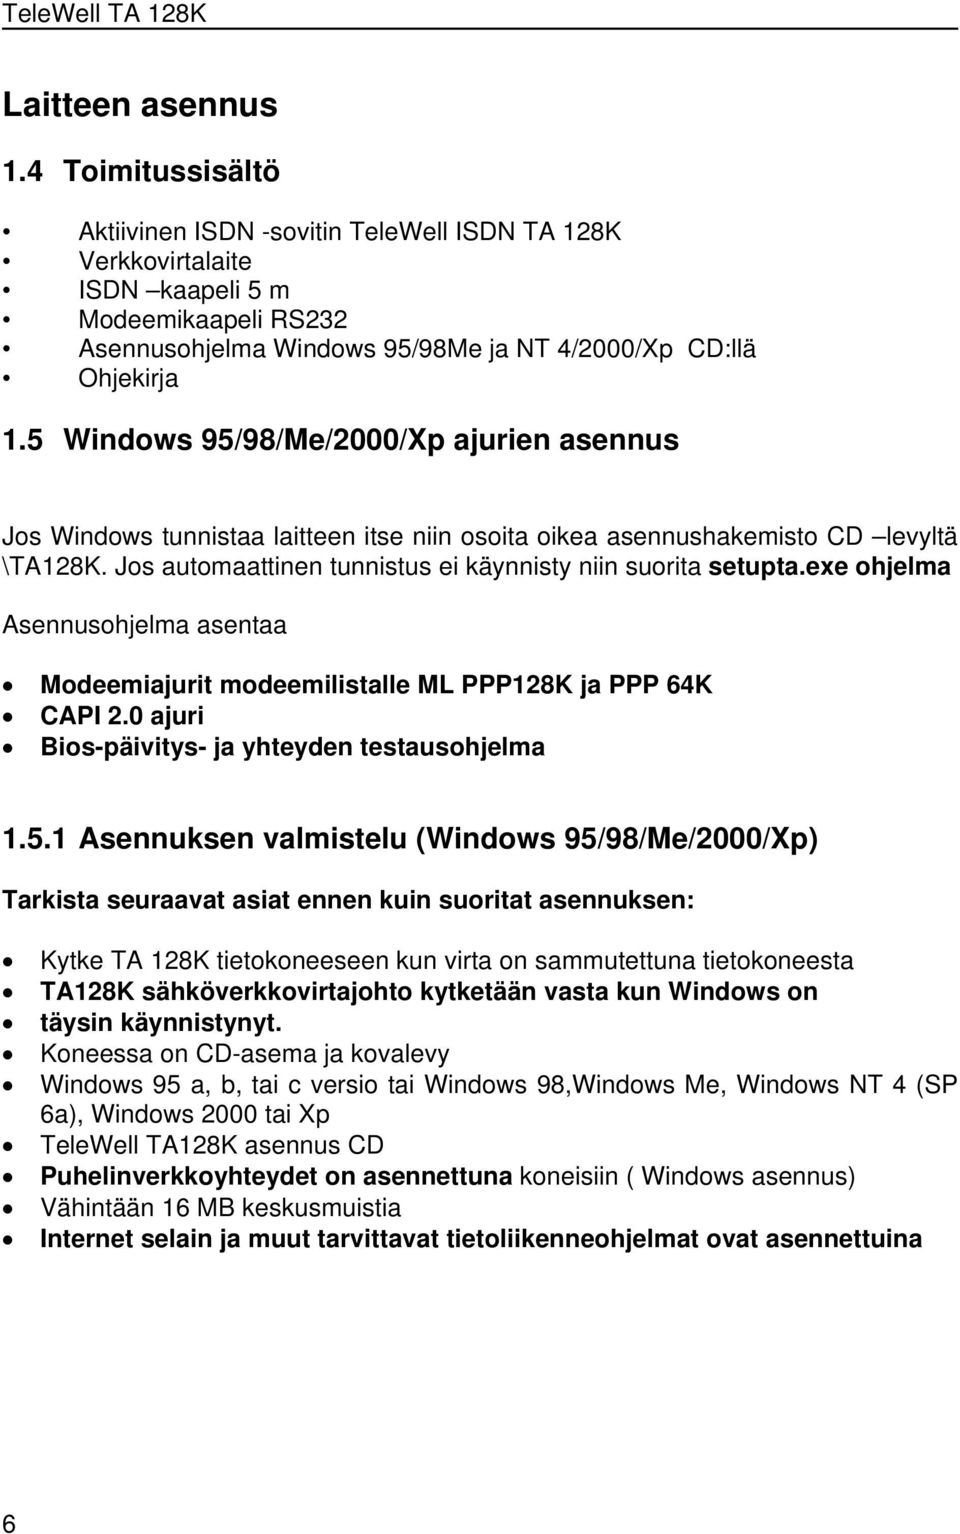 5 Windows 95/98/Me/2000/Xp ajurien asennus Jos Windows tunnistaa laitteen itse niin osoita oikea asennushakemisto CD levyltä \TA128K. Jos automaattinen tunnistus ei käynnisty niin suorita setupta.